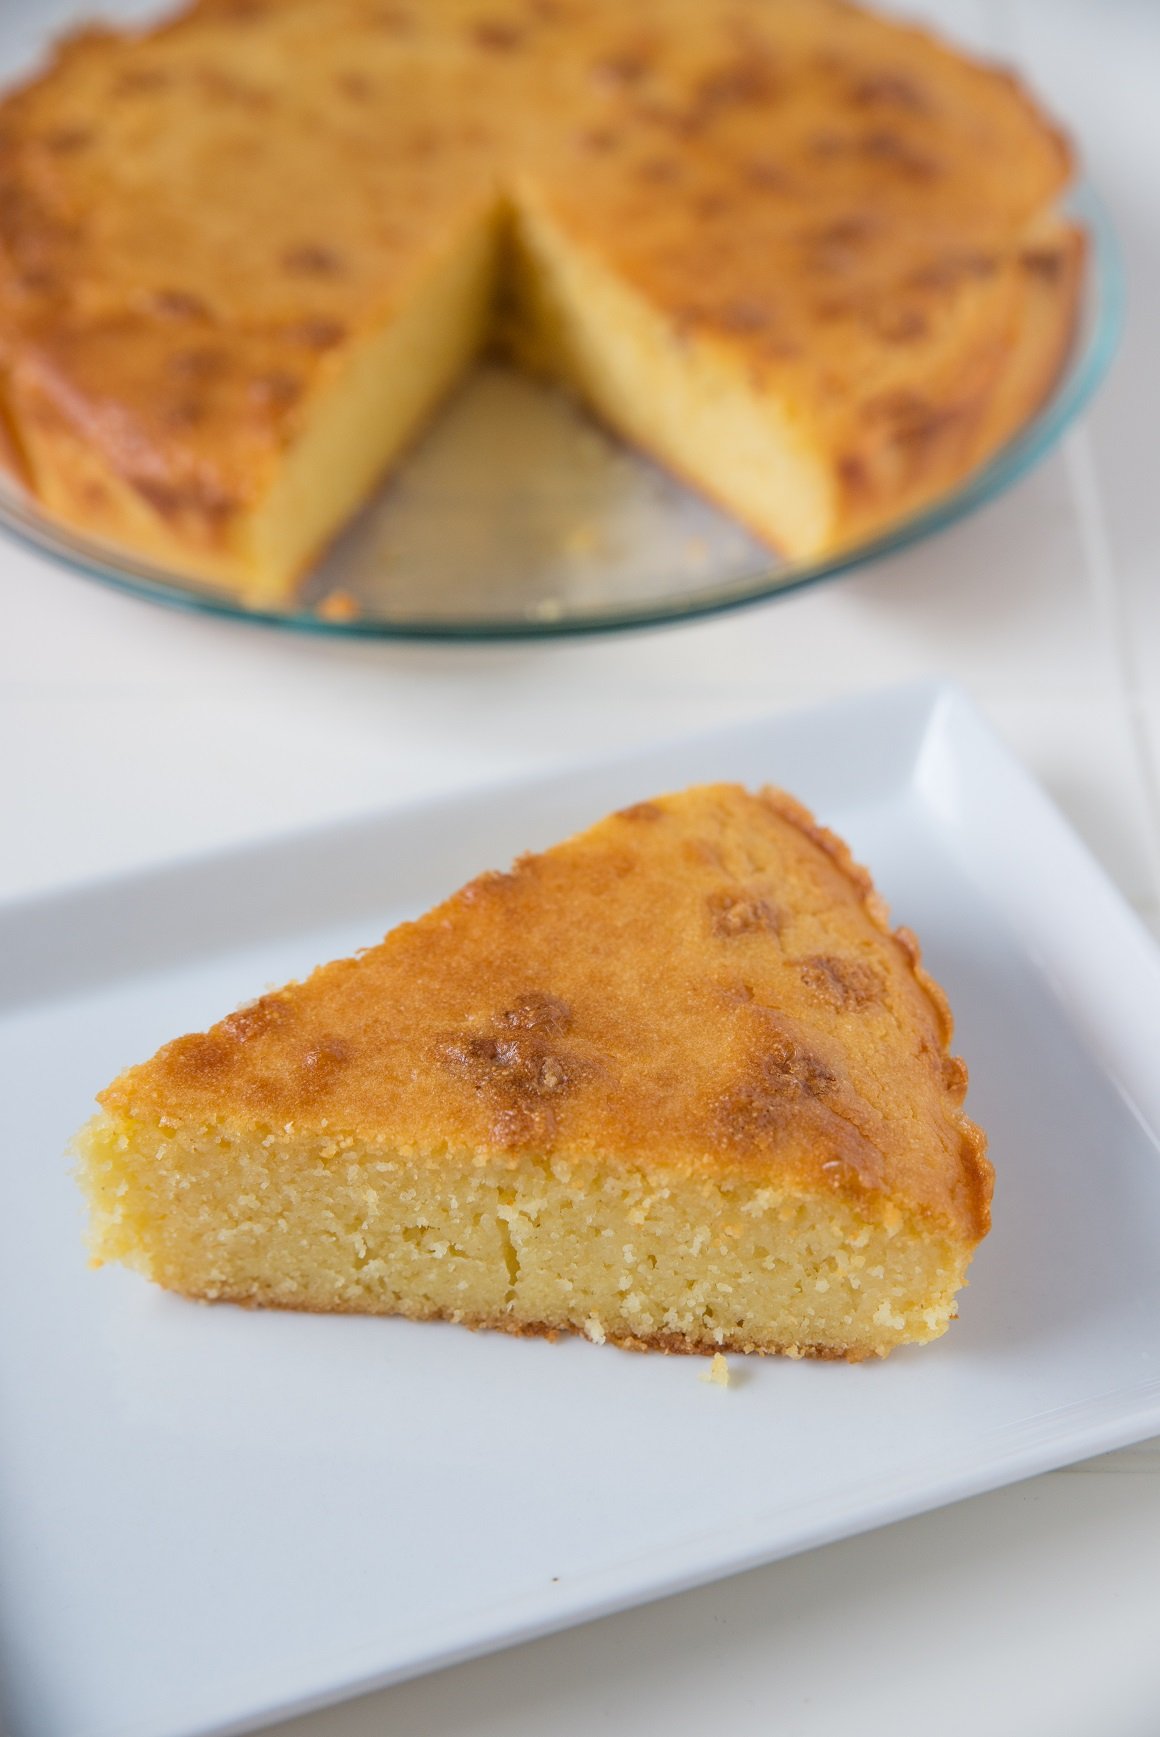 Palentu možete iskoristiti i za ukusan, jednostavan i nutritivno bogat kolač